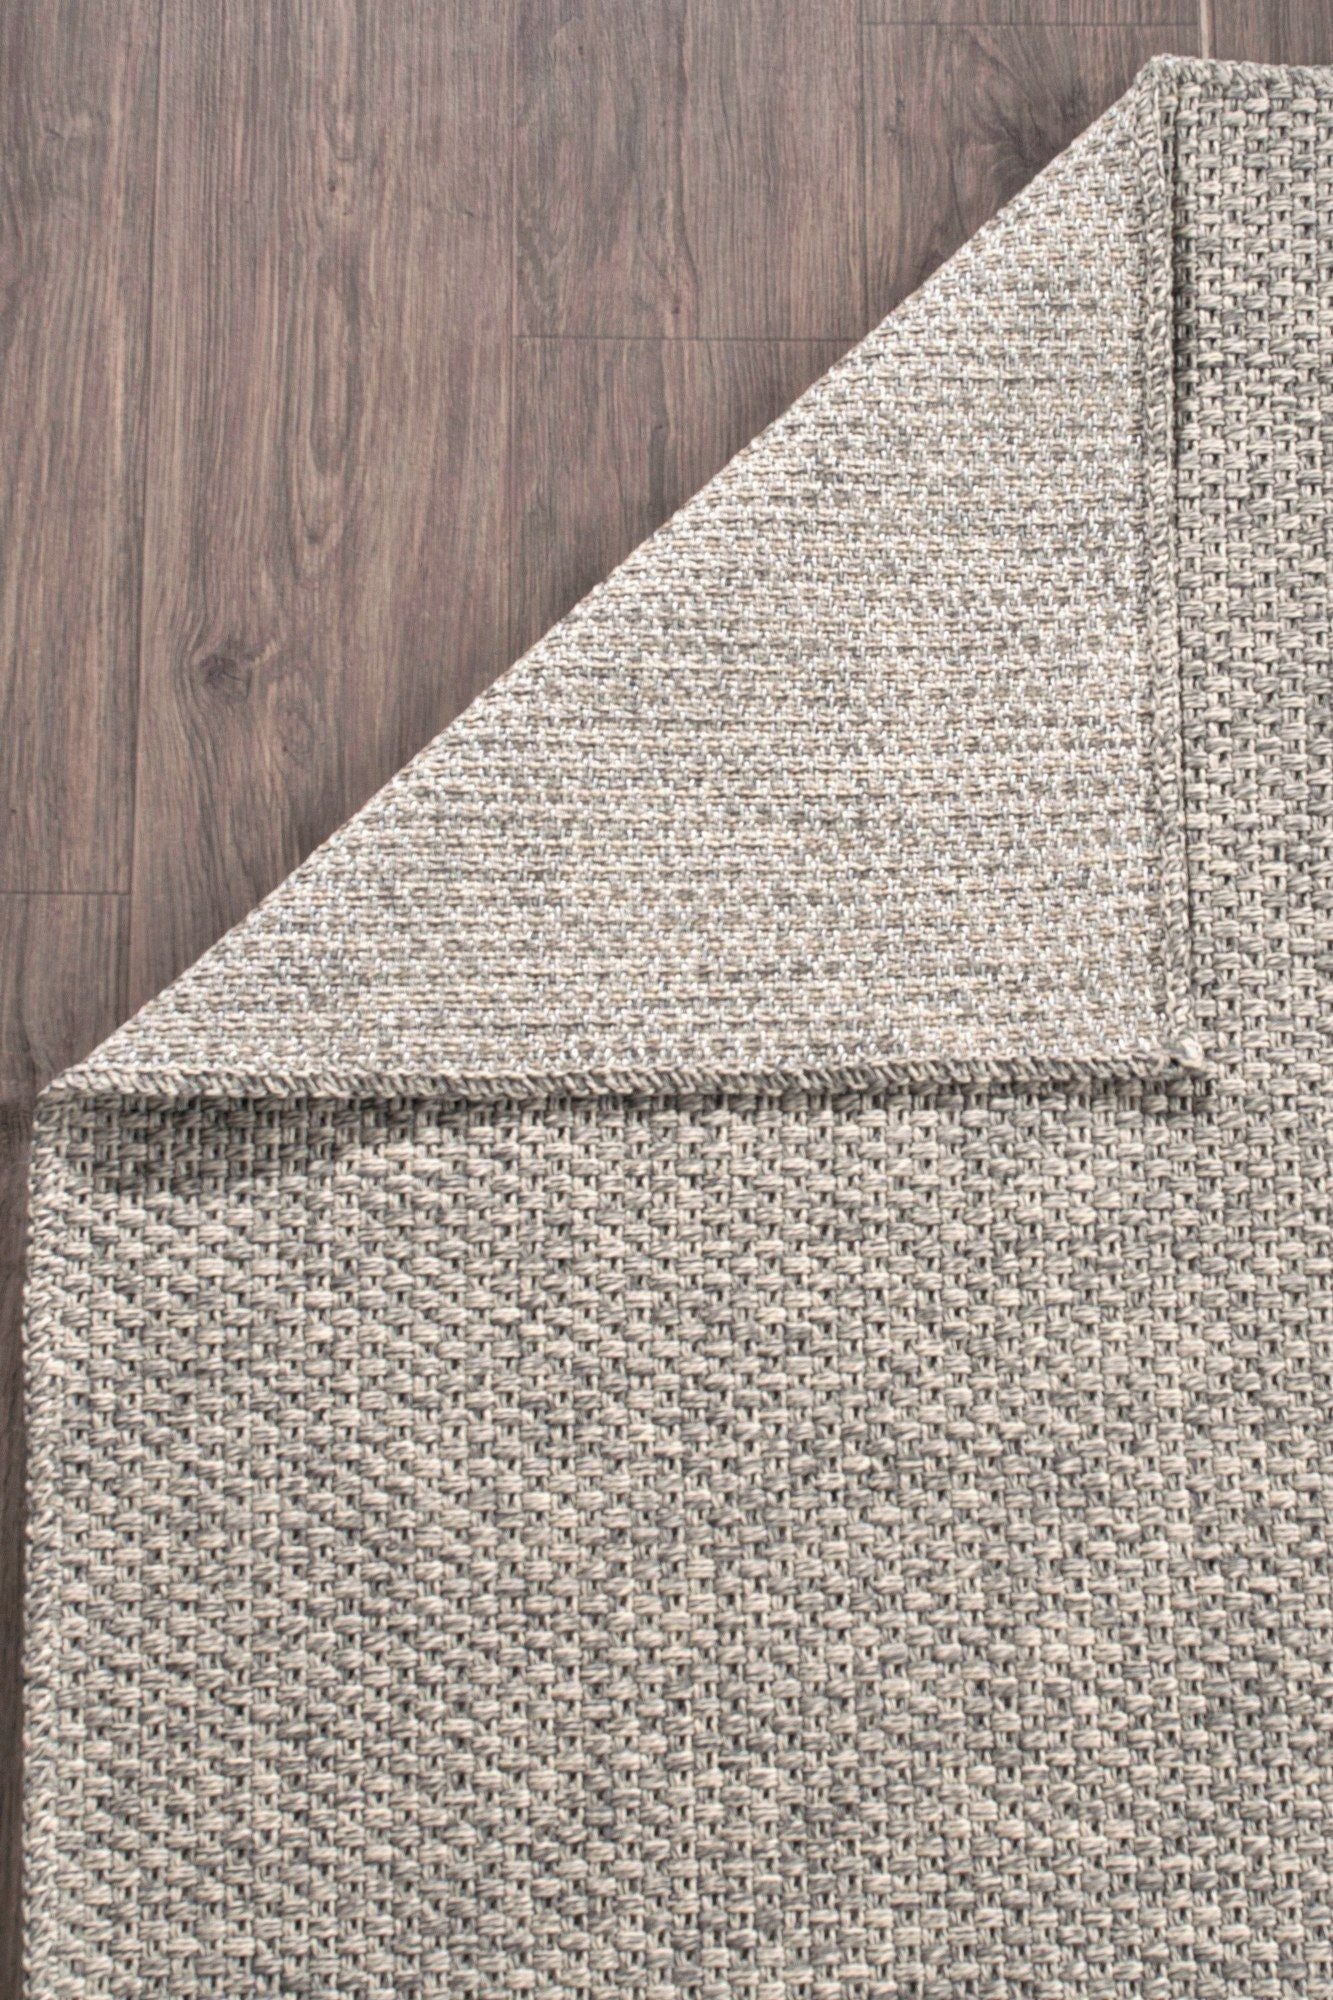 Rusticana 3103 - Hall Carpet (120 x 200)